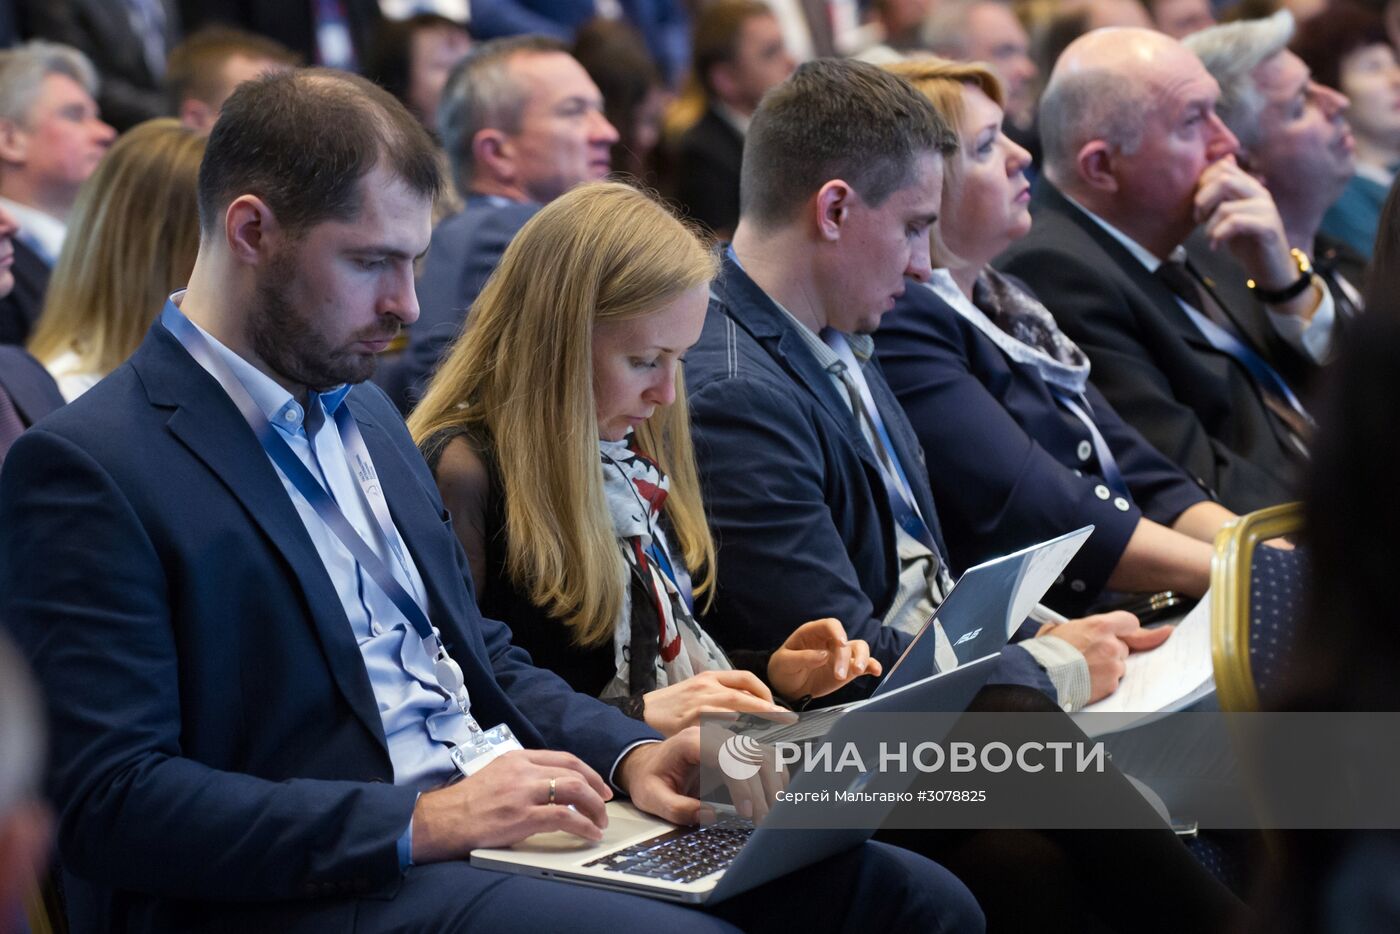 Ялтинский международный экономический форум в Крыму. День первый